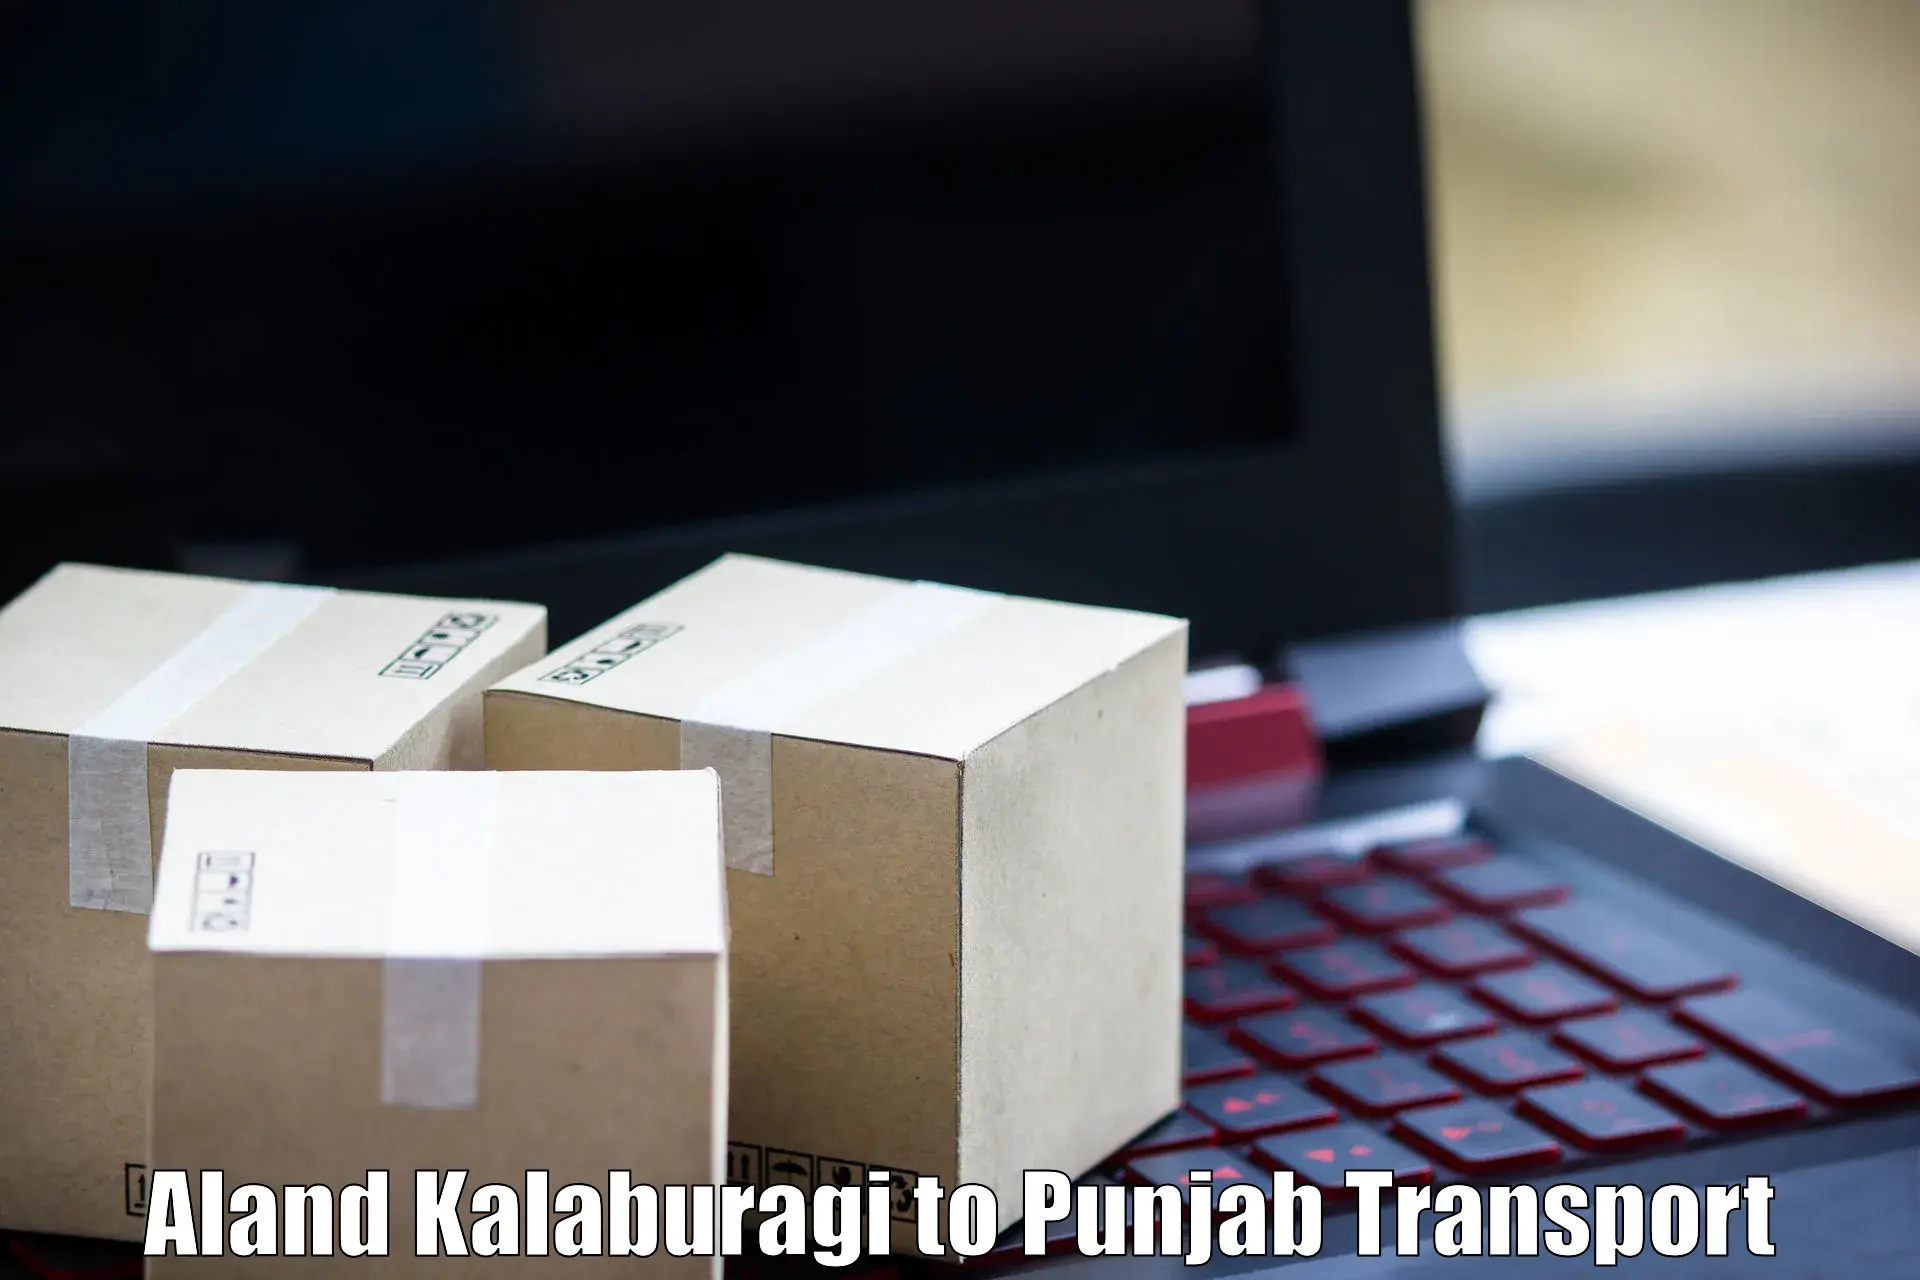 Transport shared services Aland Kalaburagi to Giddarbaha